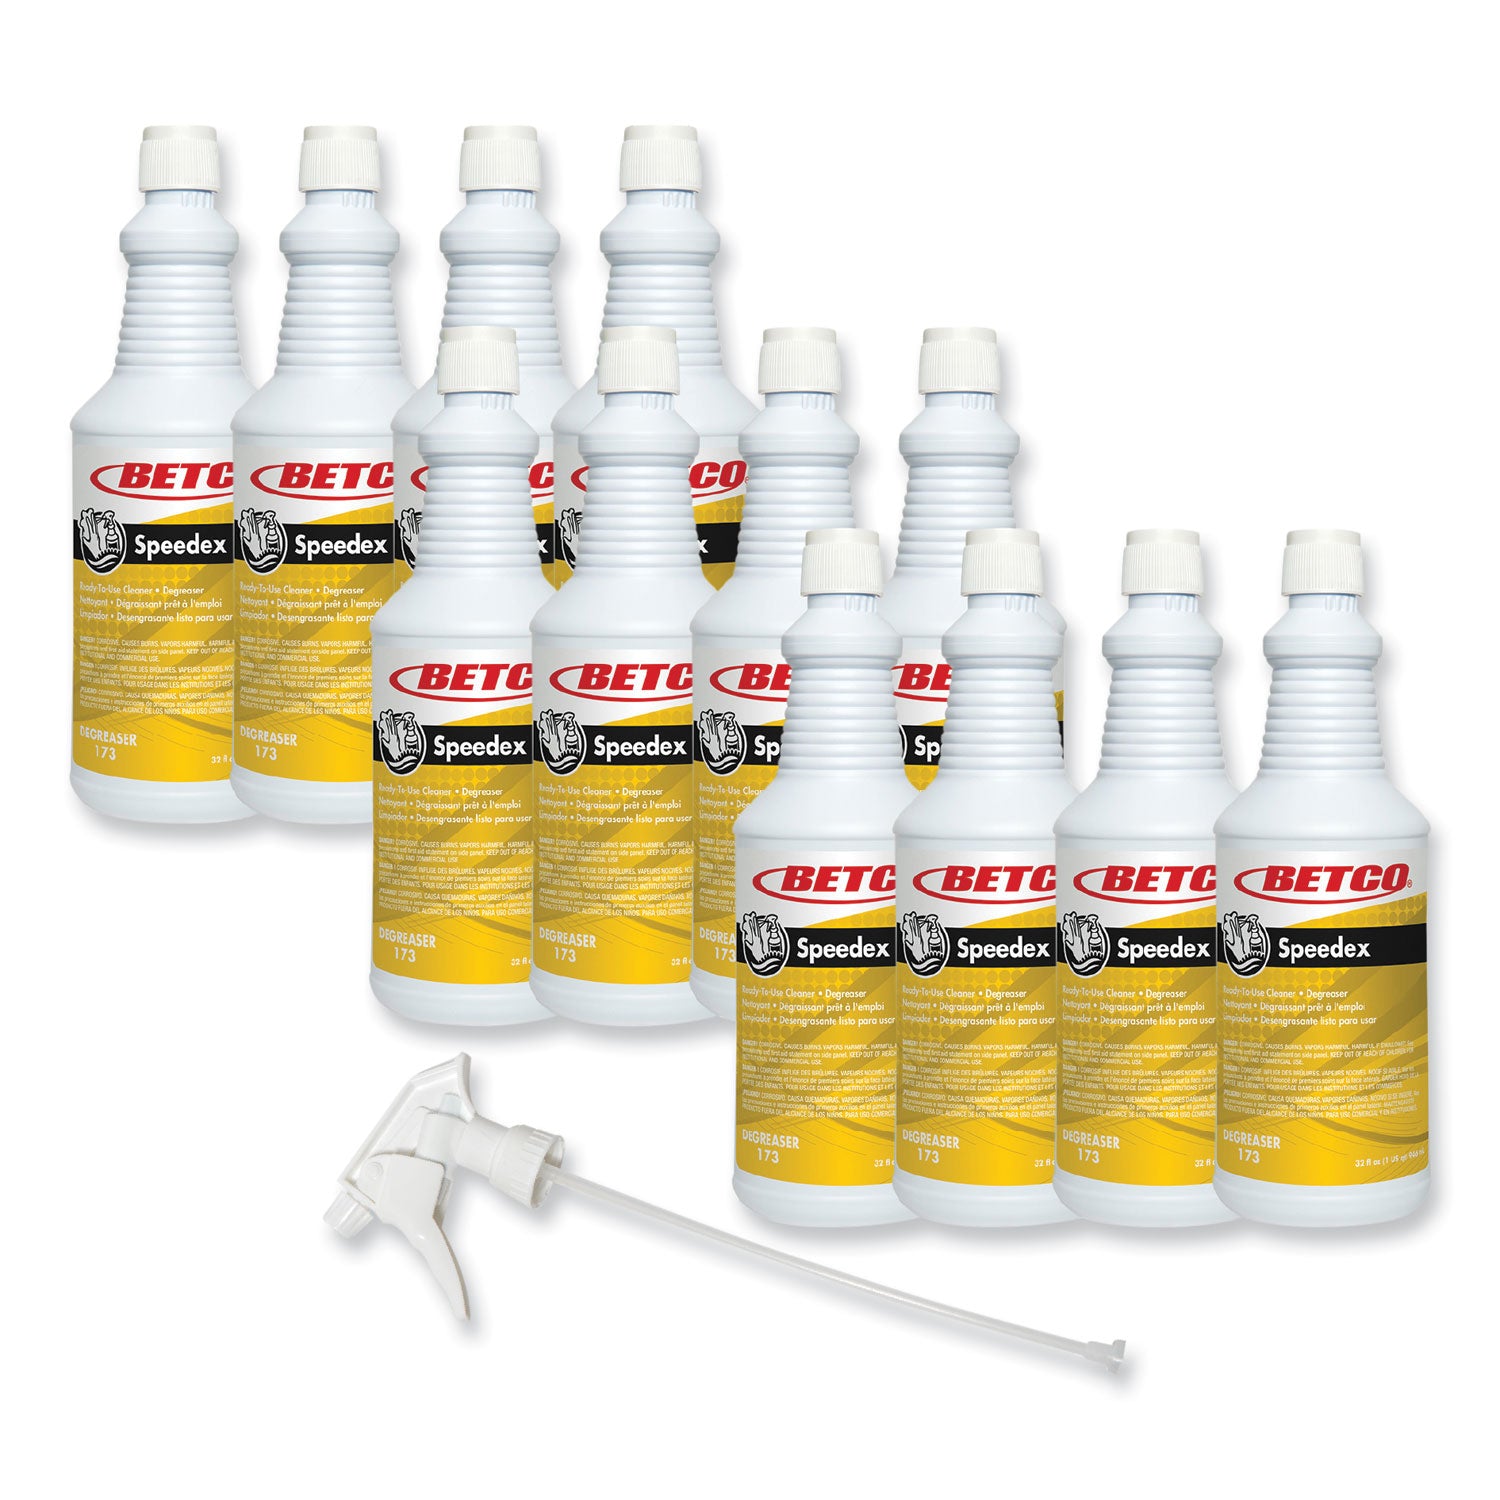 speedex-degreaser-mint-32-oz-spray-bottle-12-carton_bet1731200 - 7